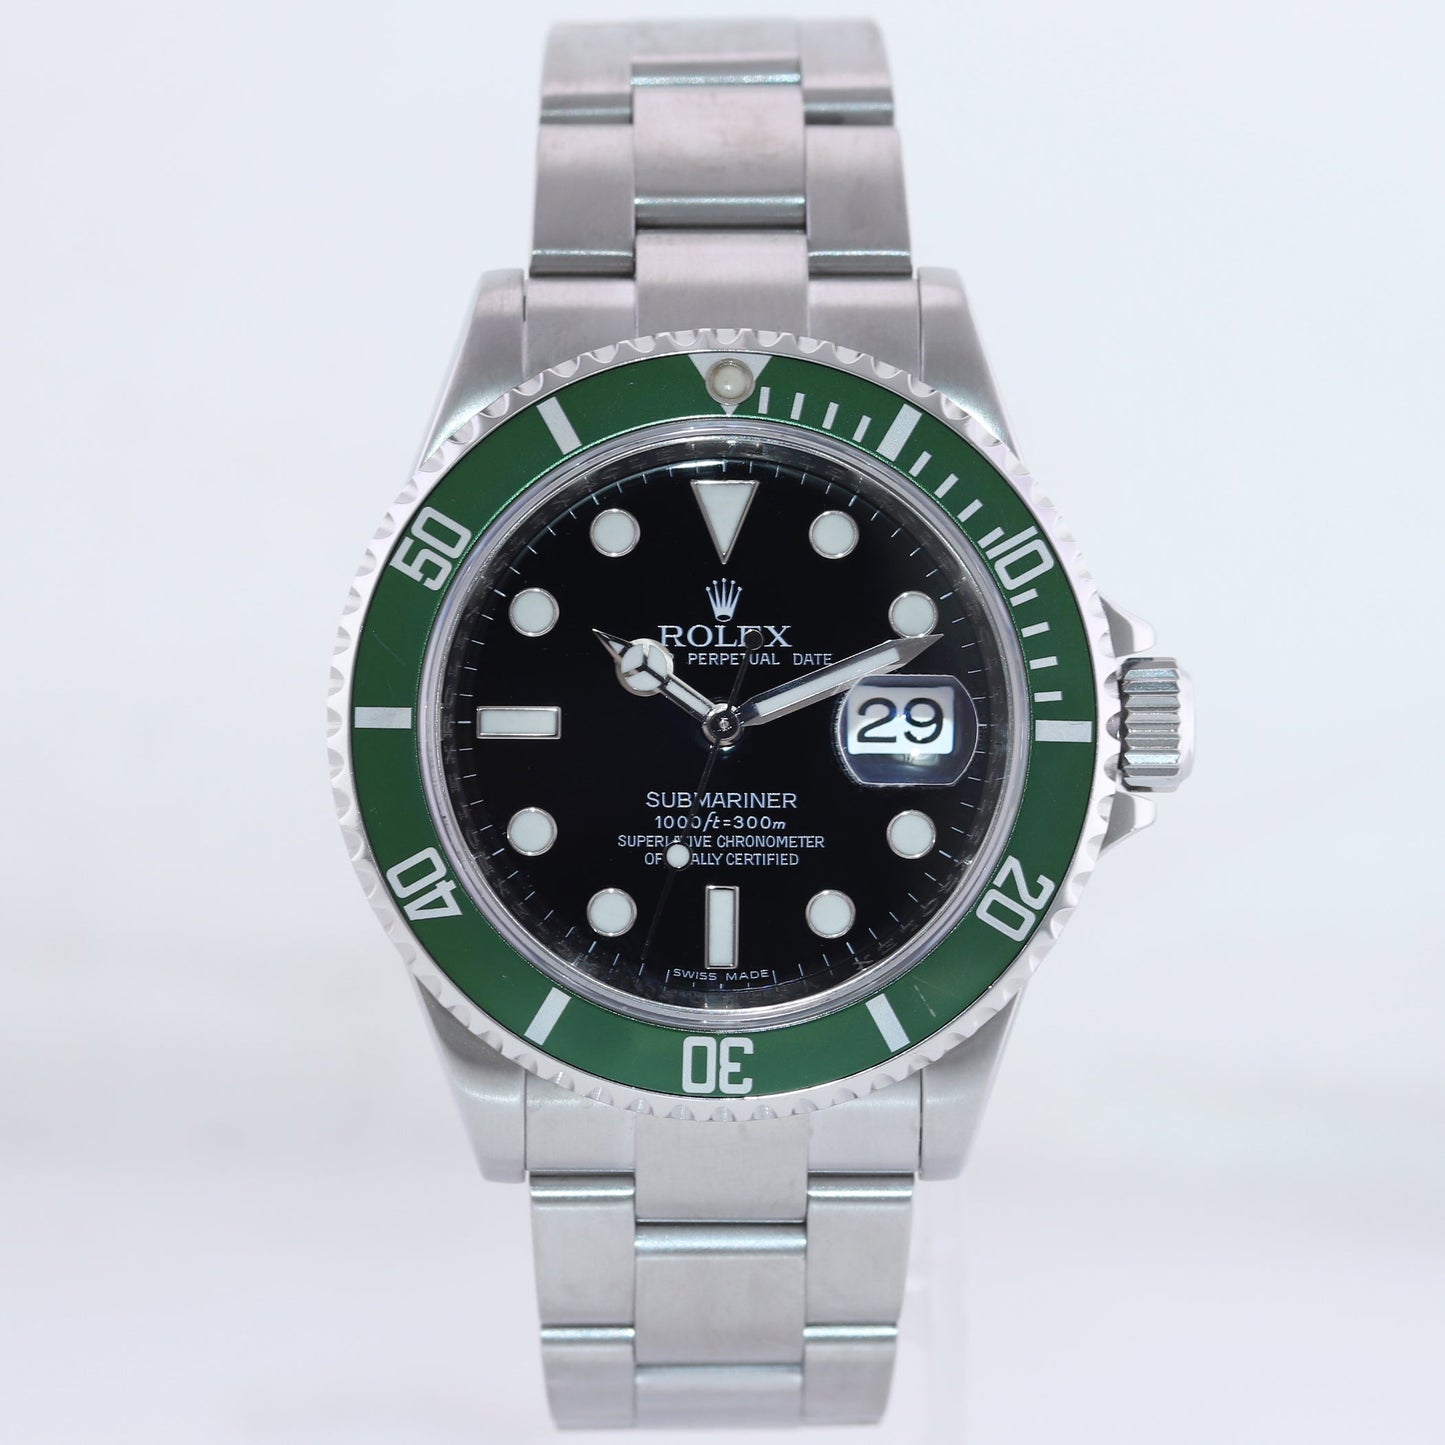 2009 Rolex 16610LV Rolex Green Submariner Kermit 40mm Black Dial Watch Box